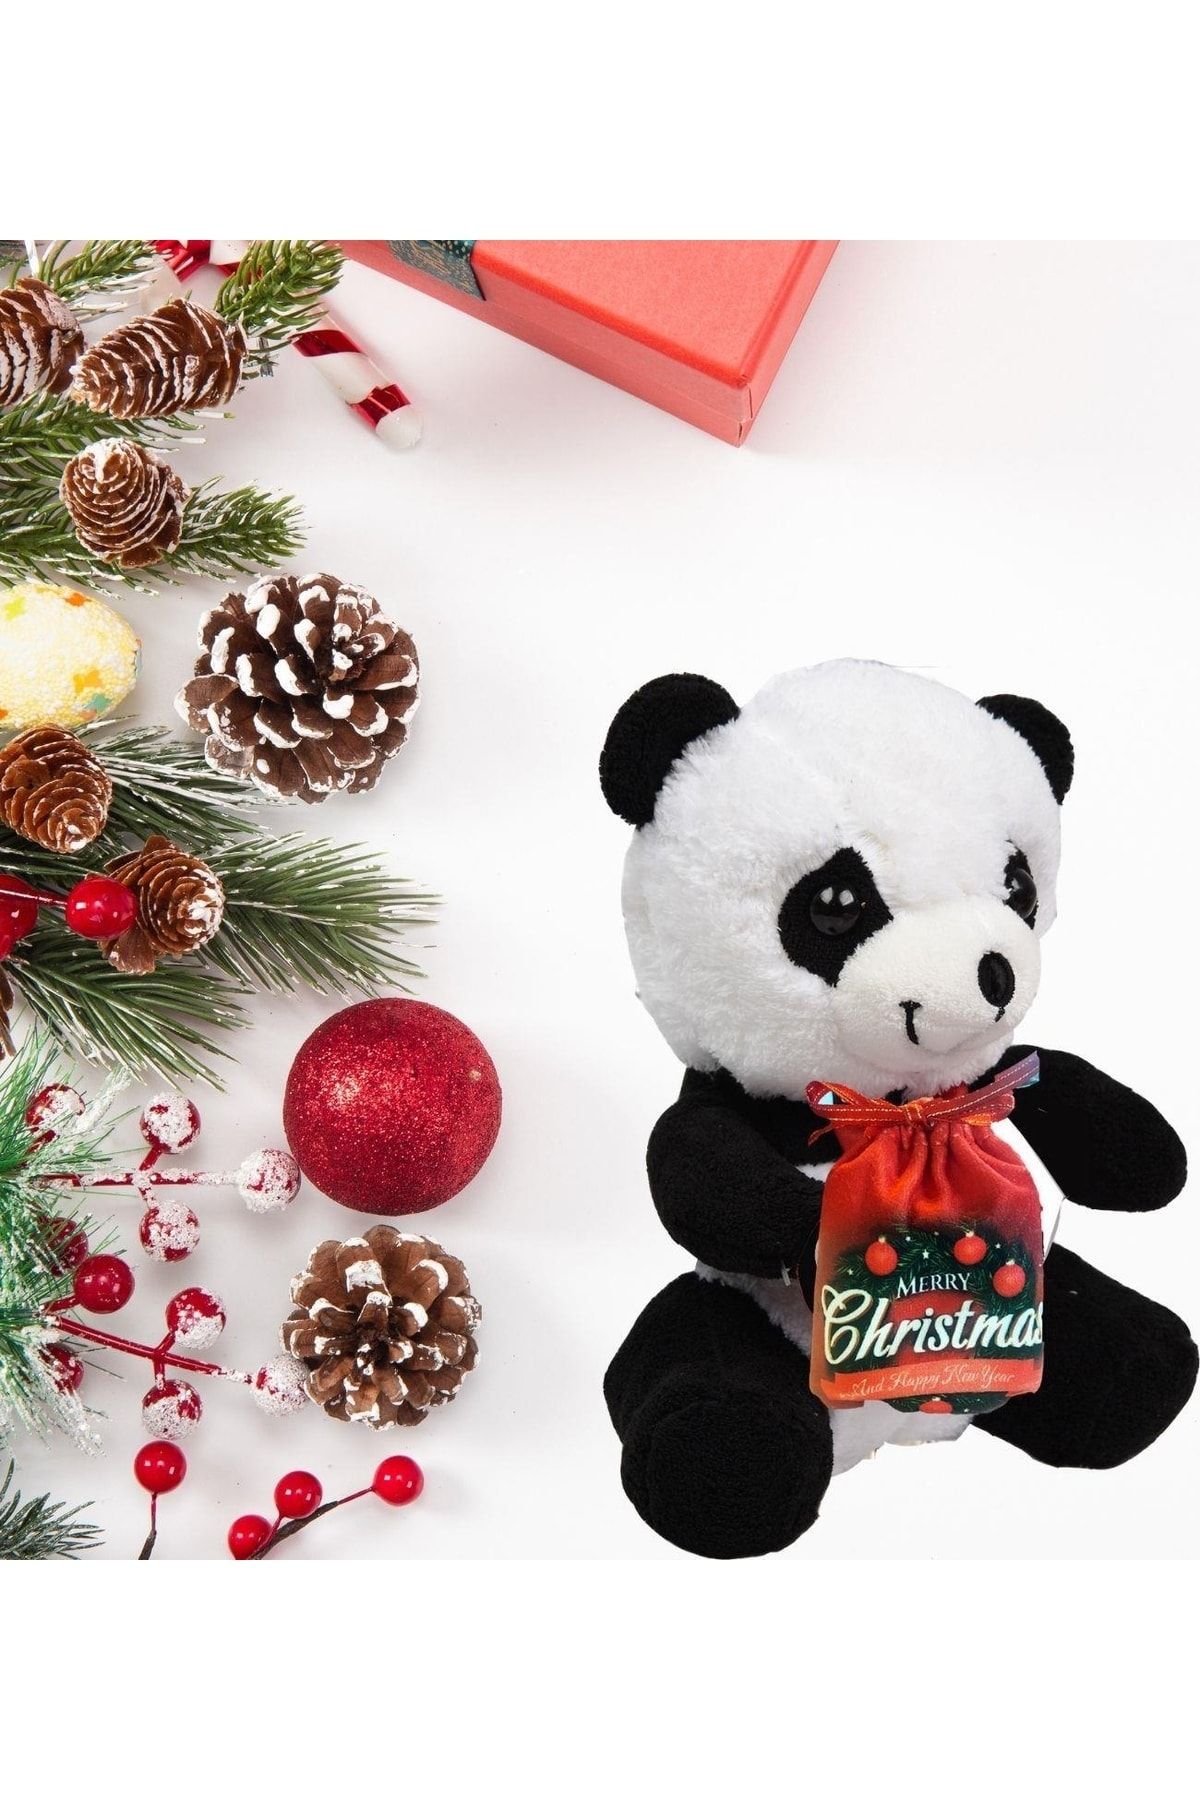 Sole Çikolatalı Yeni Yıla Özel "merry Christmas" Temalı Sevimli Panda-40 Cm